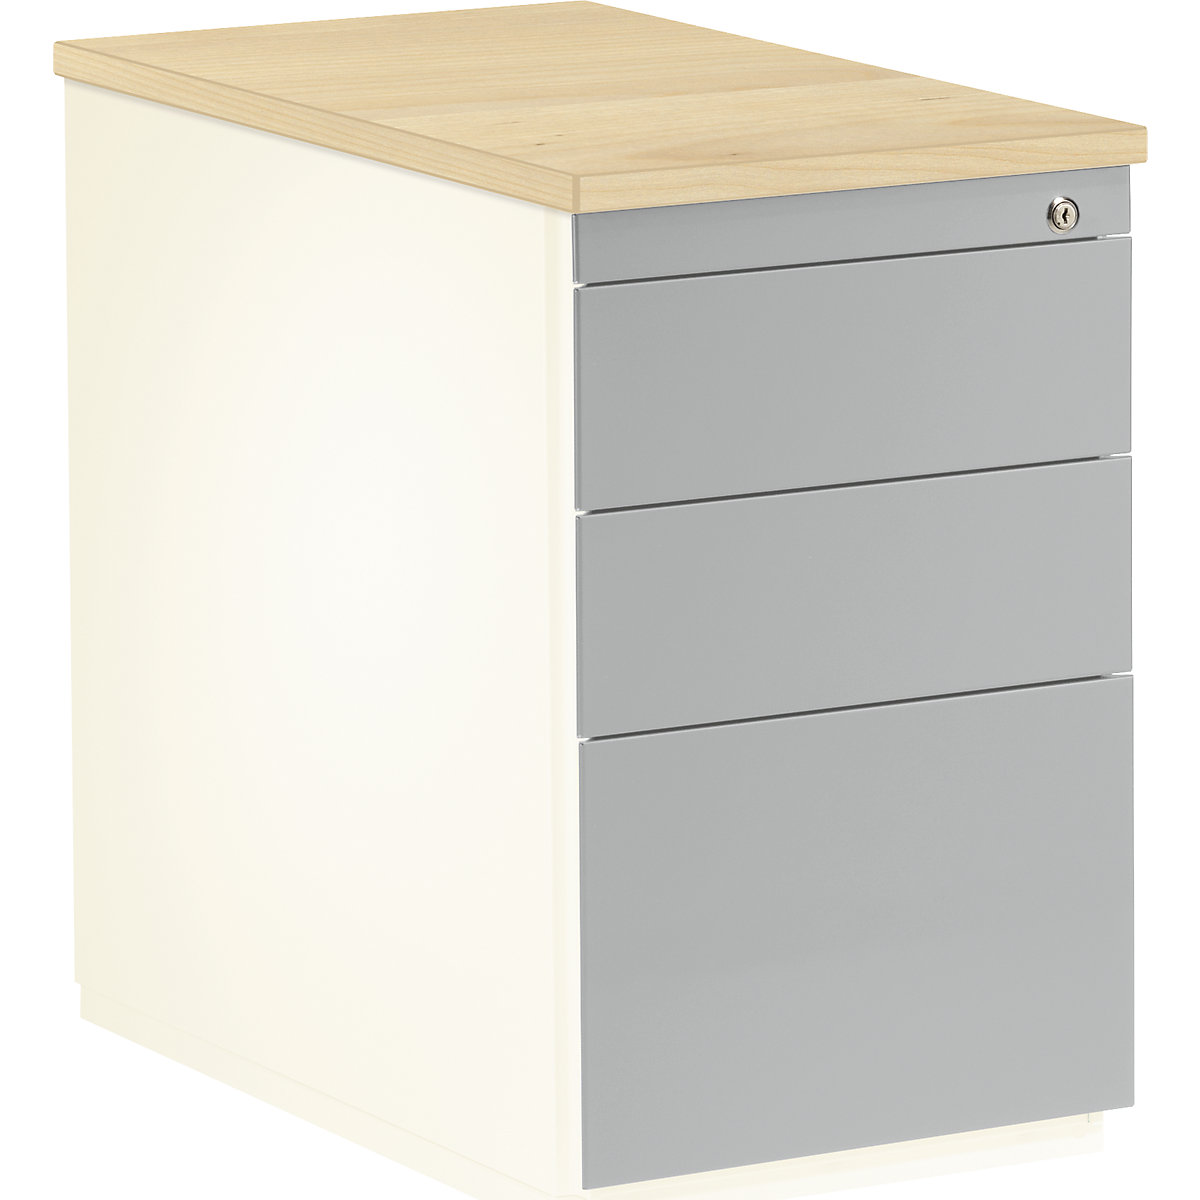 mauser – Casetieră cu sertare, î. x ad. 720 x 800 mm, 2 sertare pentru materiale, 1 registratură suspendată, alb pur / alb aluminiu / arțar